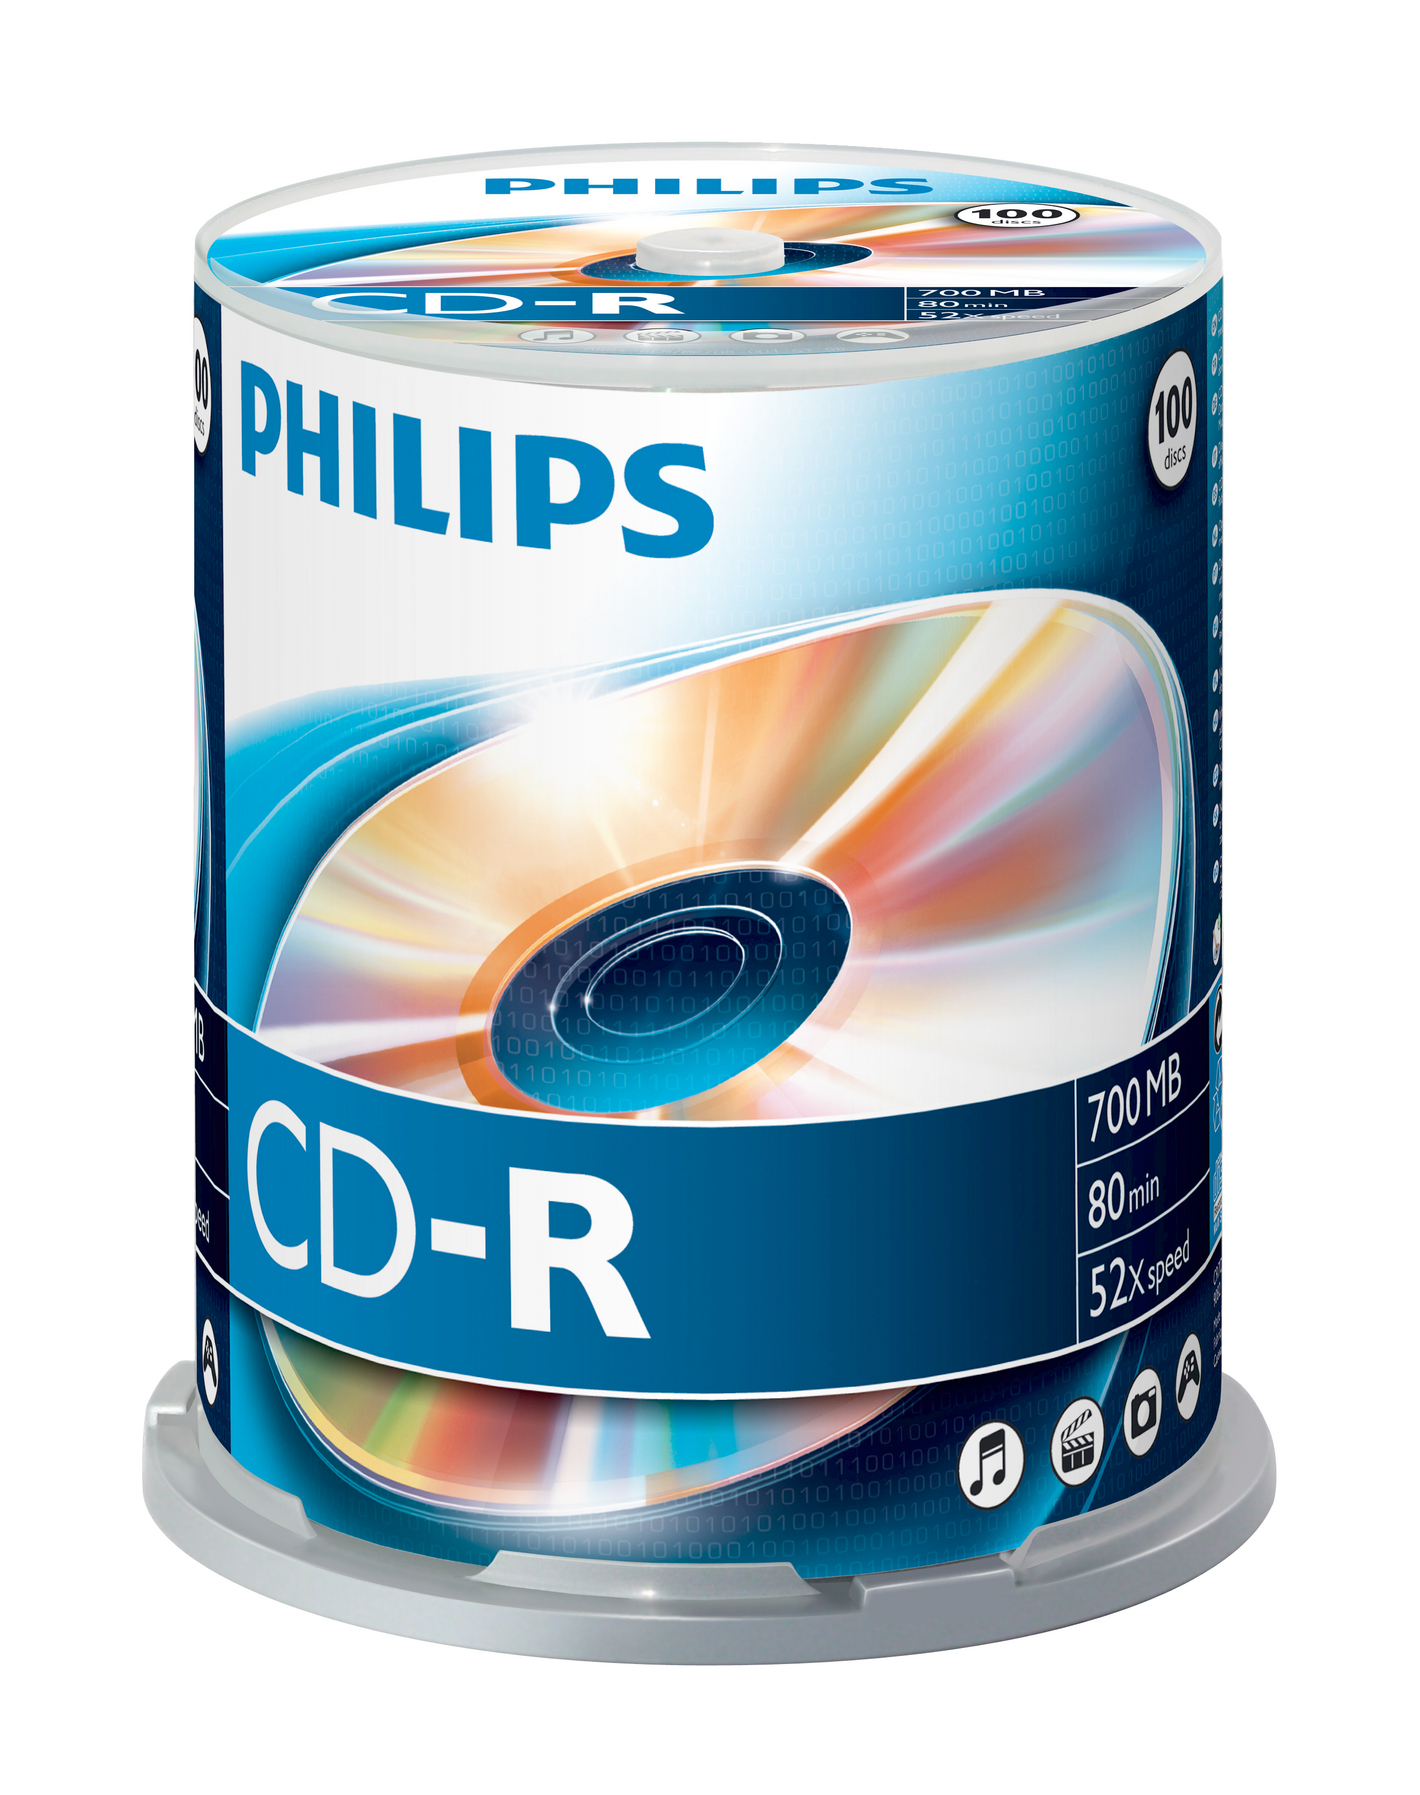 PHILIPS CD-R CR7D5NB00/00 100er Spindel